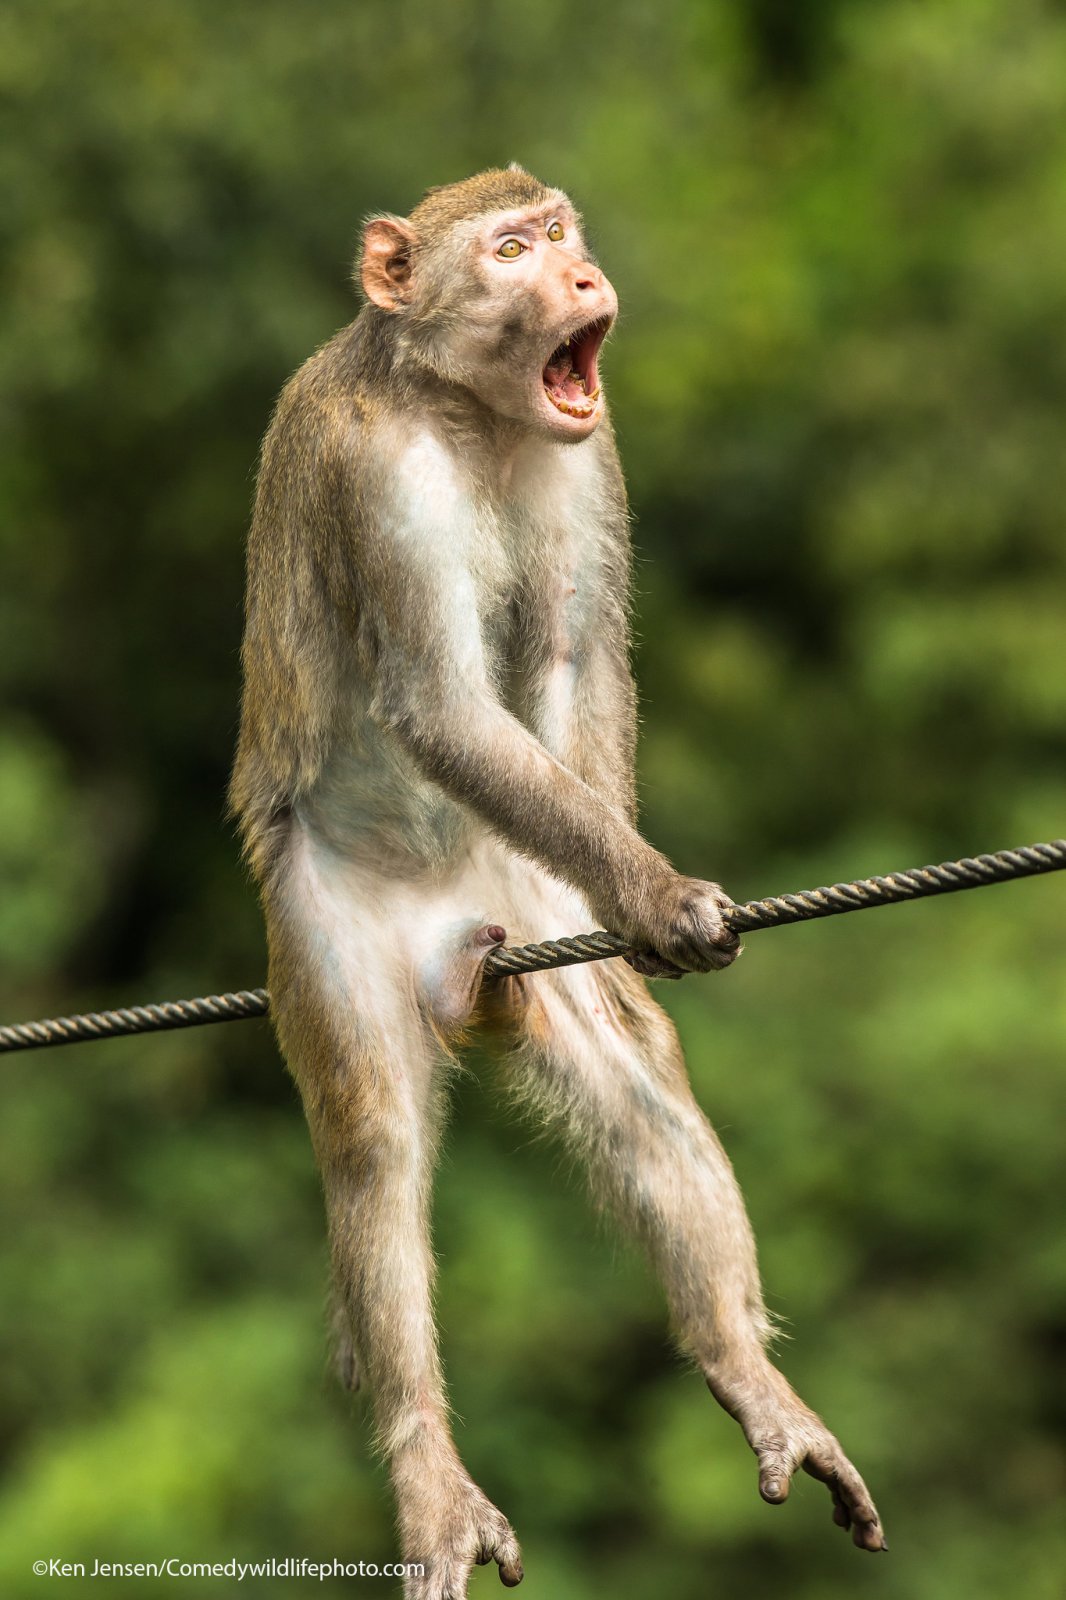 Víťazná fotka Comedy Wild Photo 2021 - opica na drôte